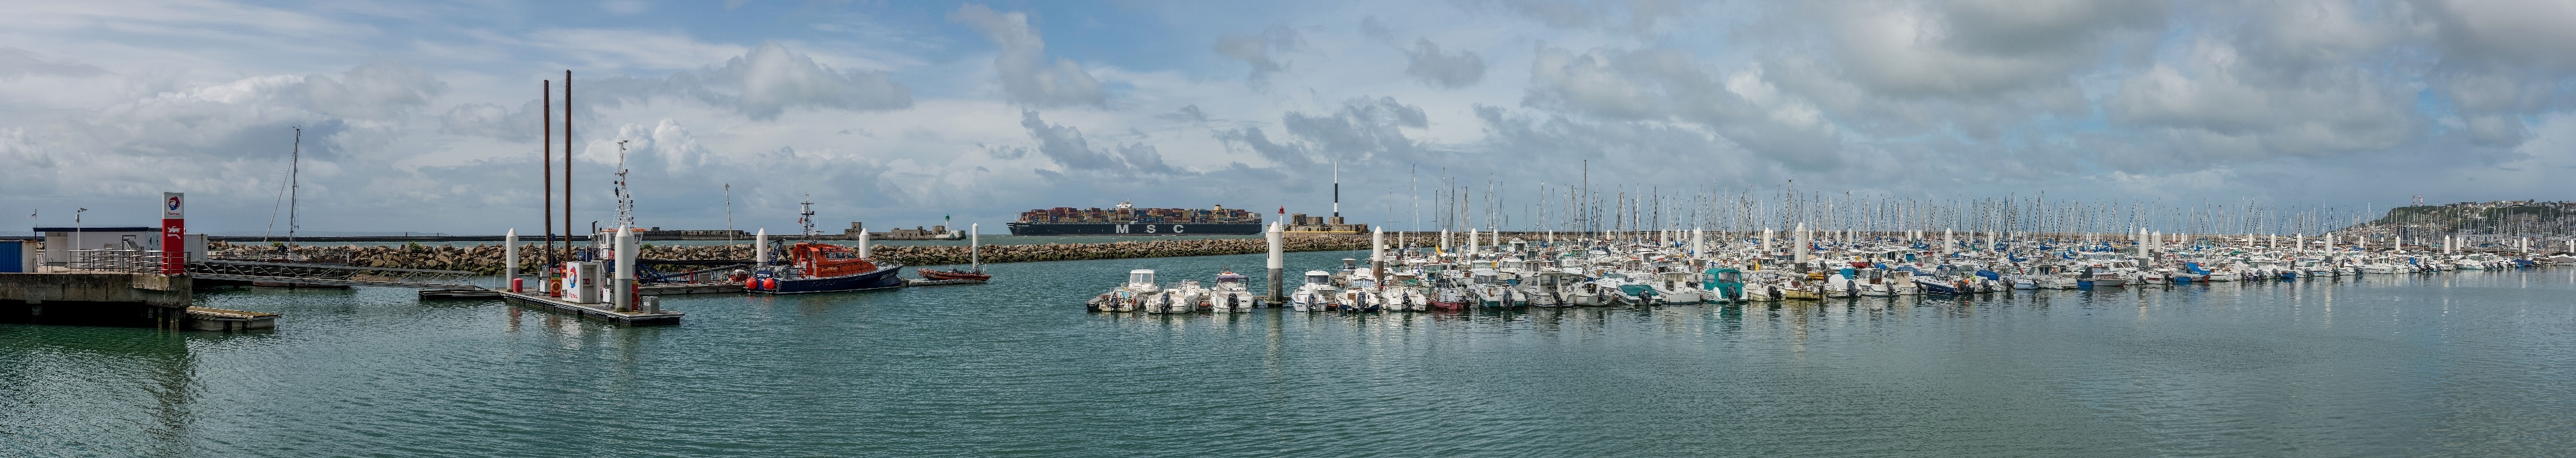 Le Port, Le Havre, Seine-Maritime (département), France